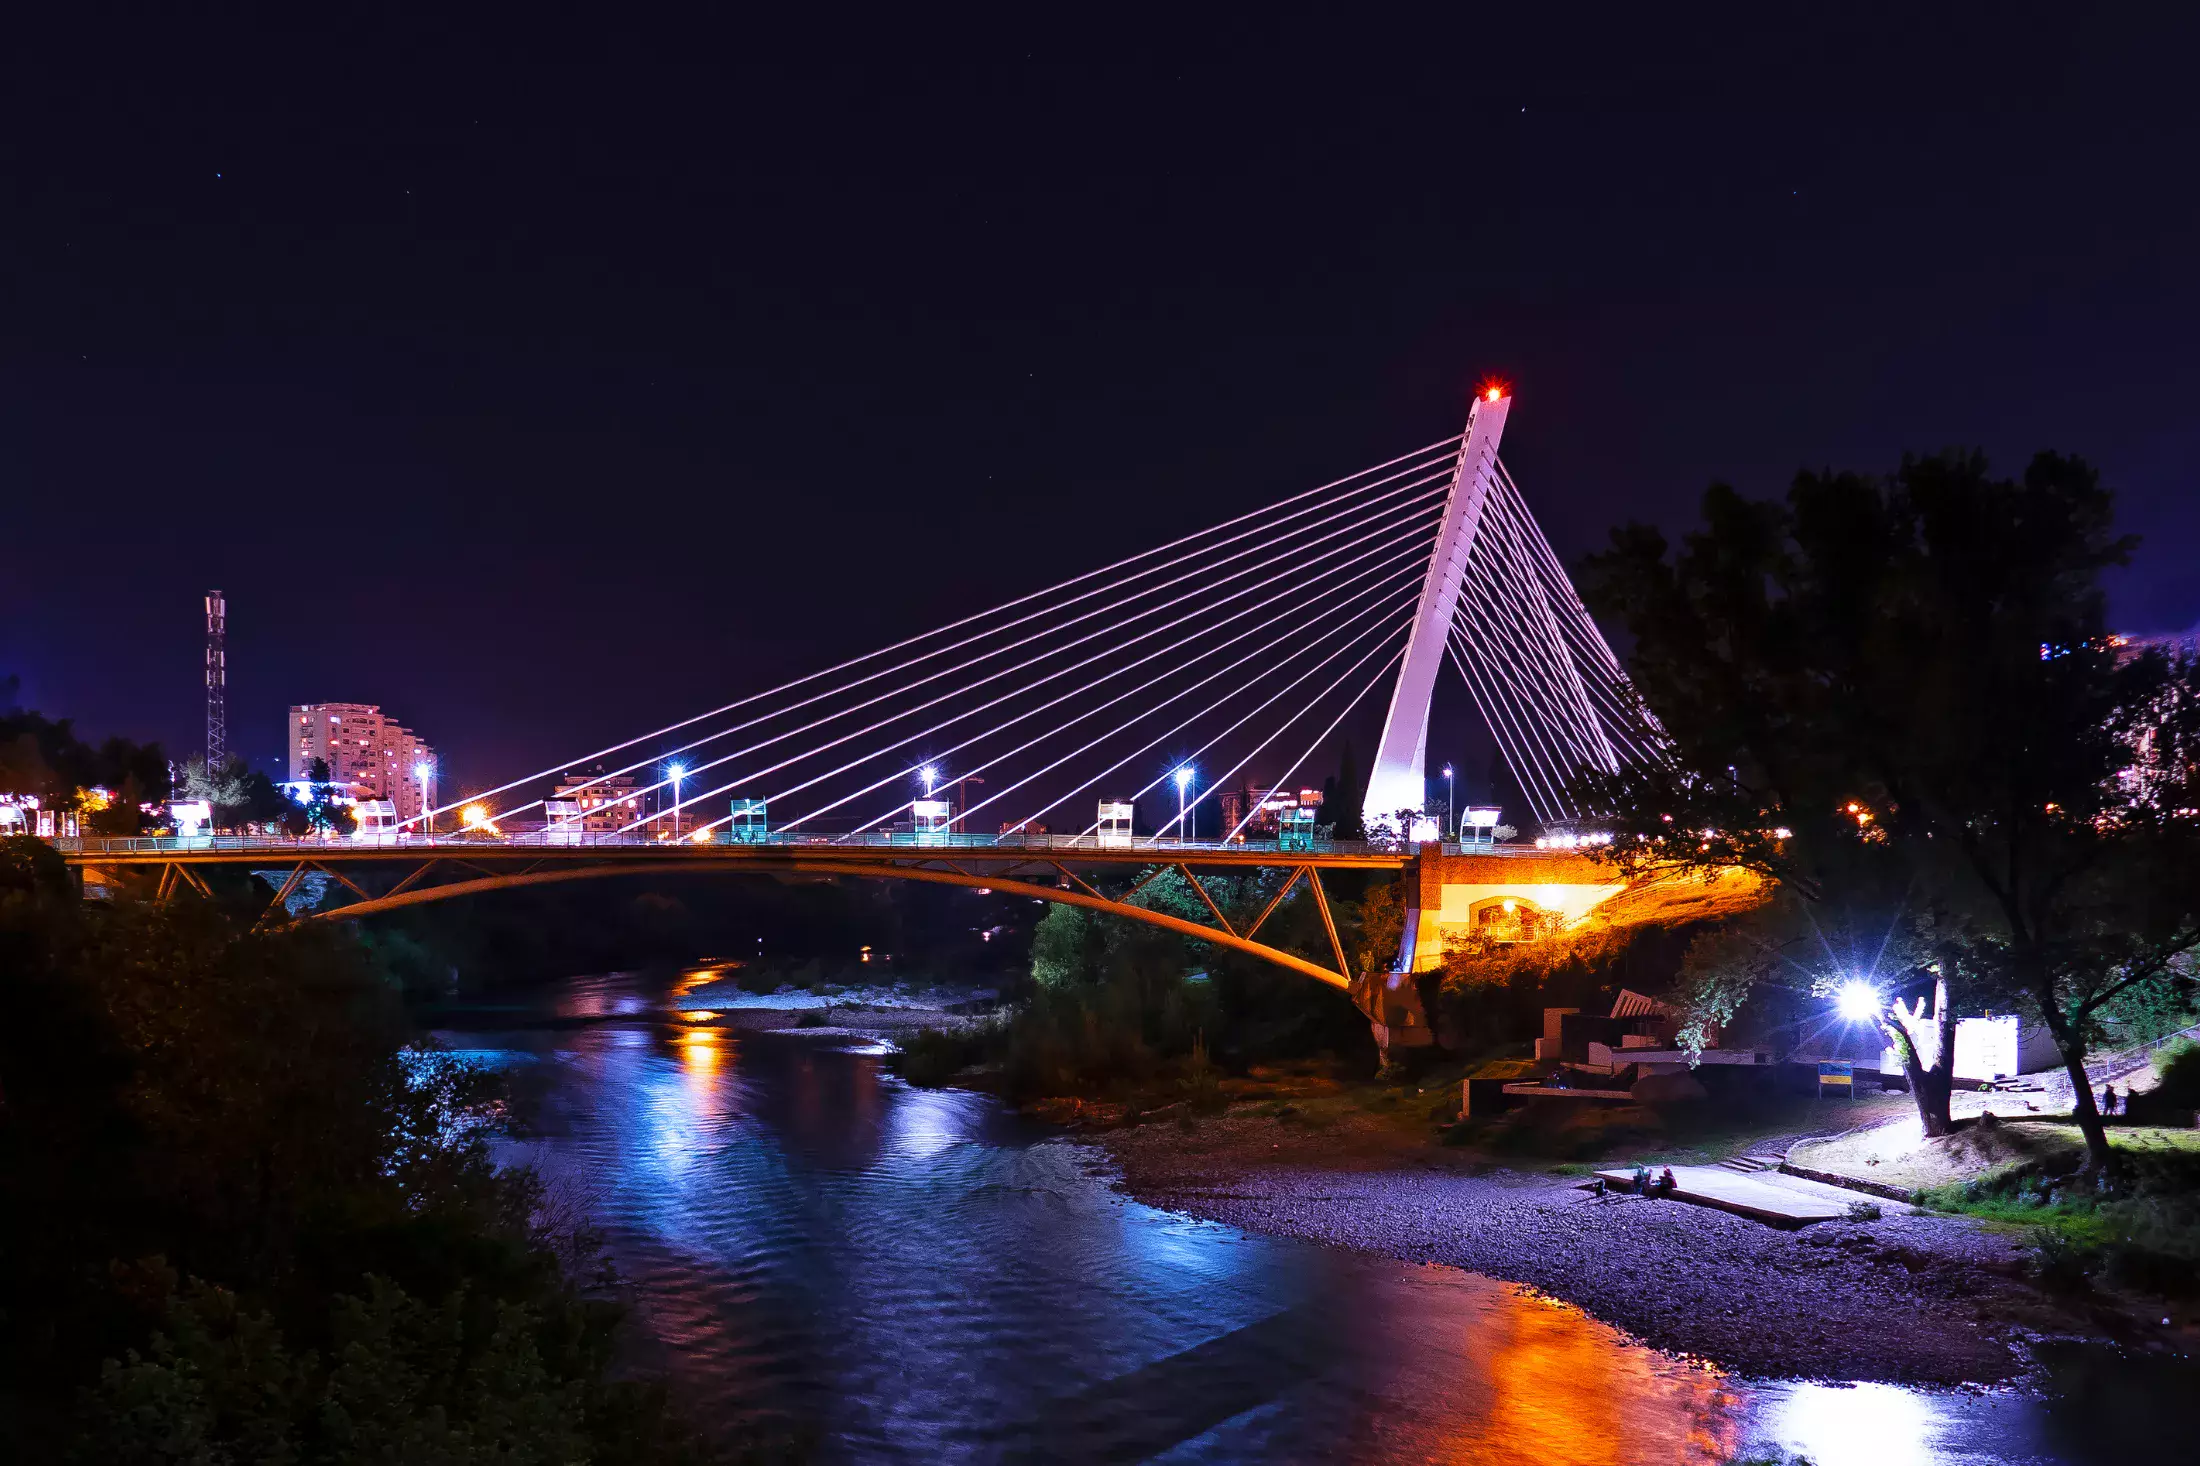 The Millennium Bridge in Podgorica at night.